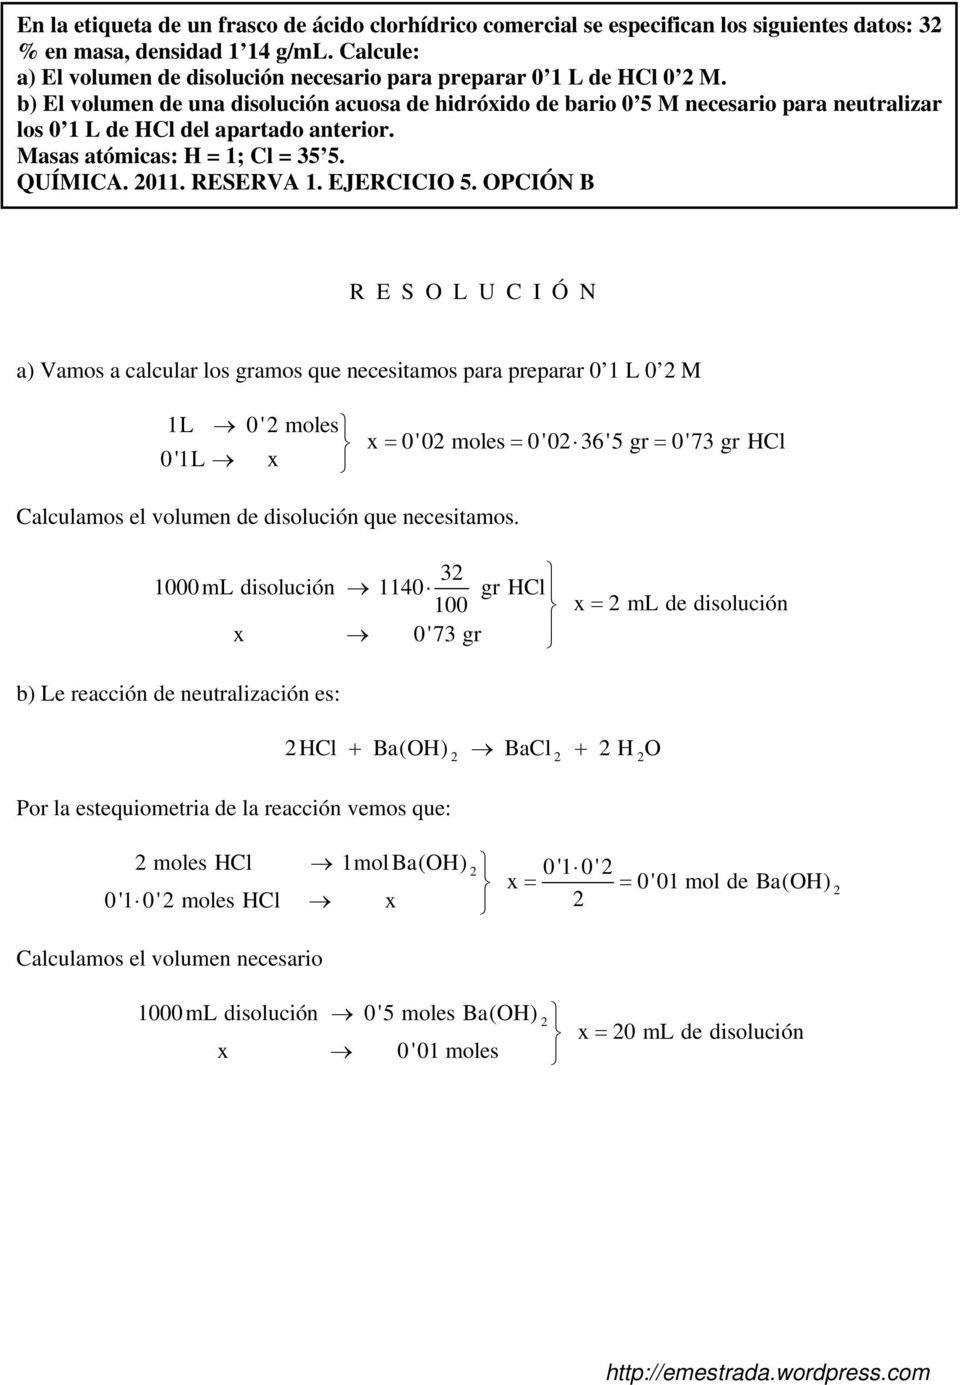 b) El volumen de una disolución acuosa de hidróxido de bario 0 5 M necesario para neutralizar los 0 1 L de HCl del apartado anterior. Masas atómicas: H = 1; Cl = 35 5. QUÍMICA. 011. RESERVA 1.